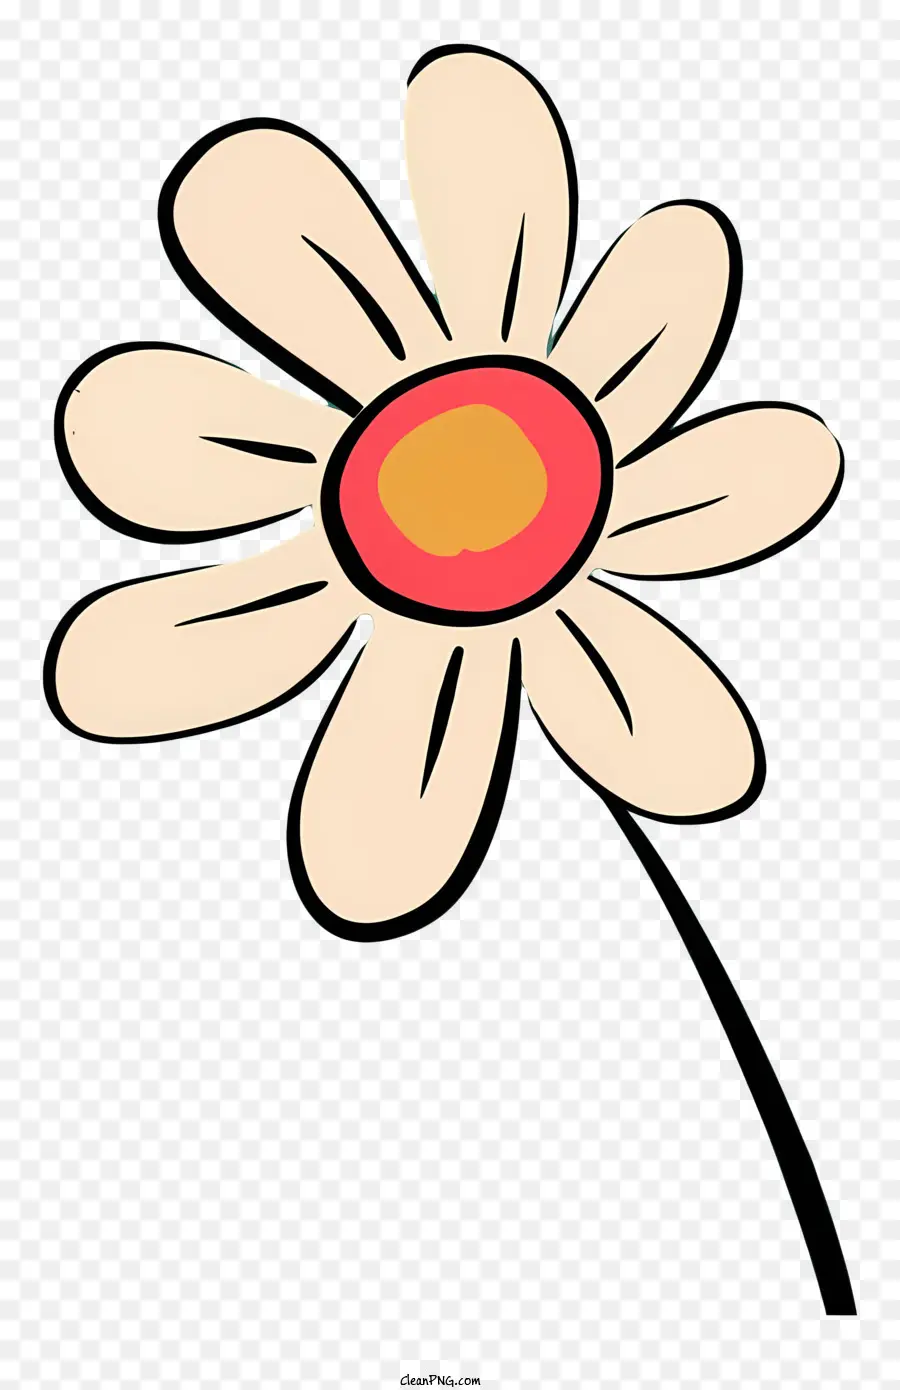 hoa cúc - Phim hoạt hình tối giản với cánh hoa trắng và trung tâm màu vàng